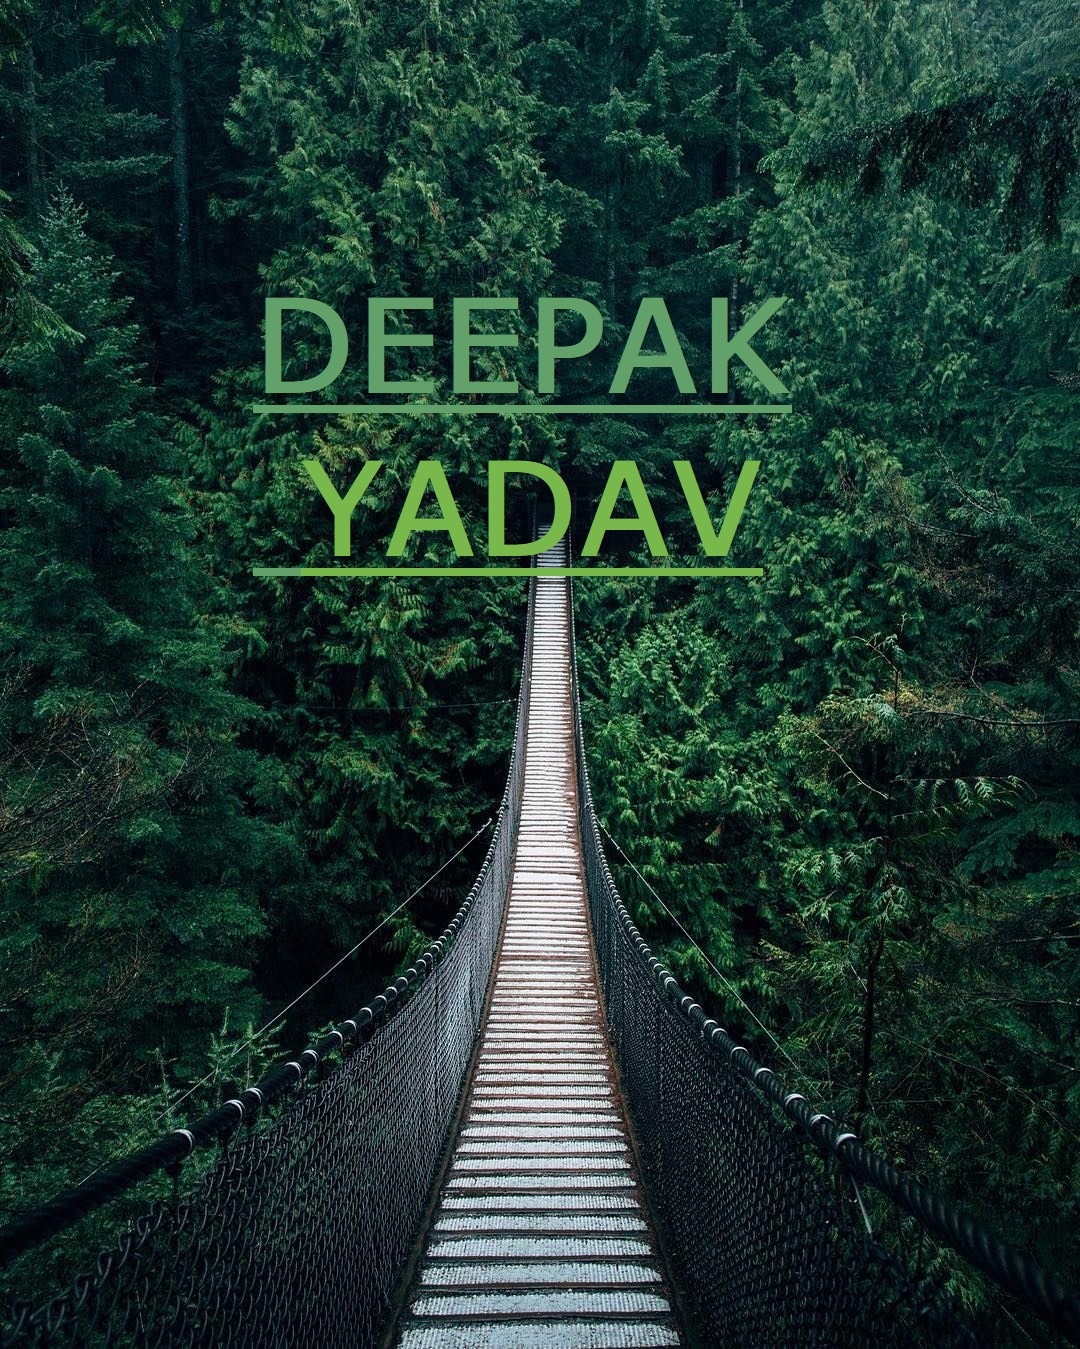 Deepak Yadav -forest